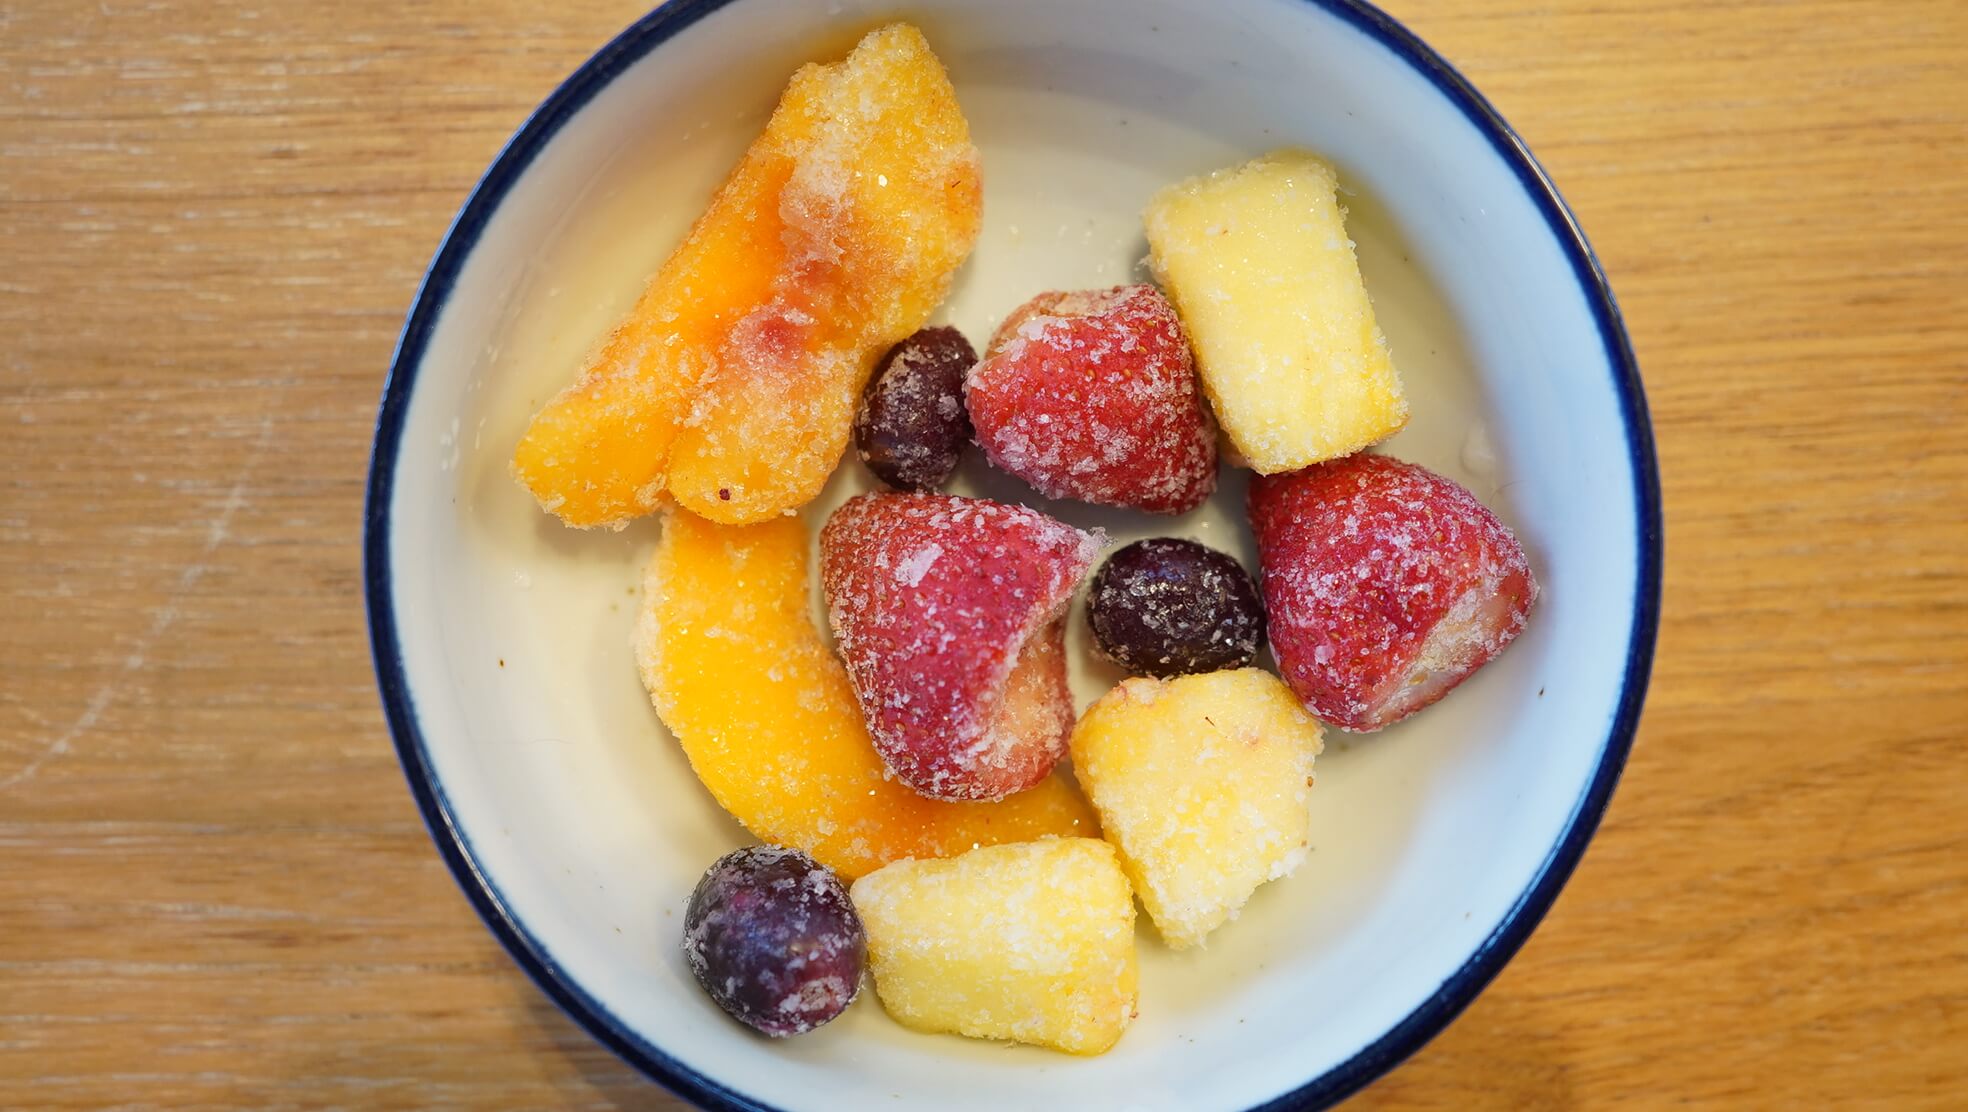 コストコの冷凍食品「サンライズグロワーズ・フルーツミックス」の解凍前の写真